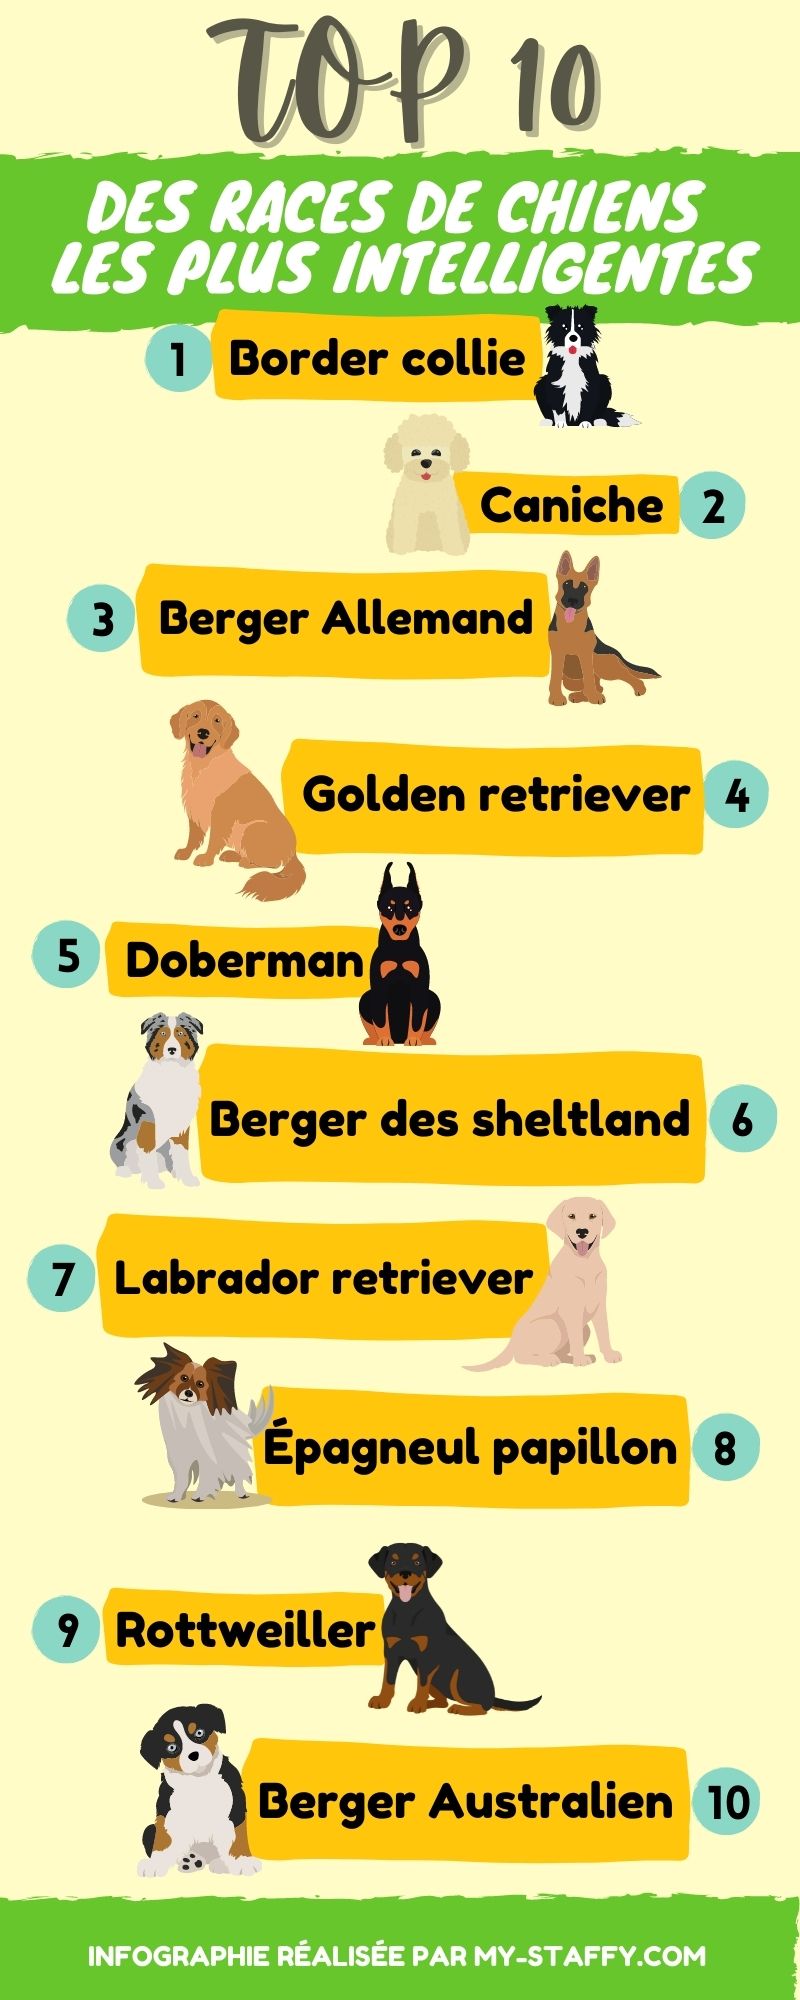 Le Top 12 des races de chiens les plus intelligentes